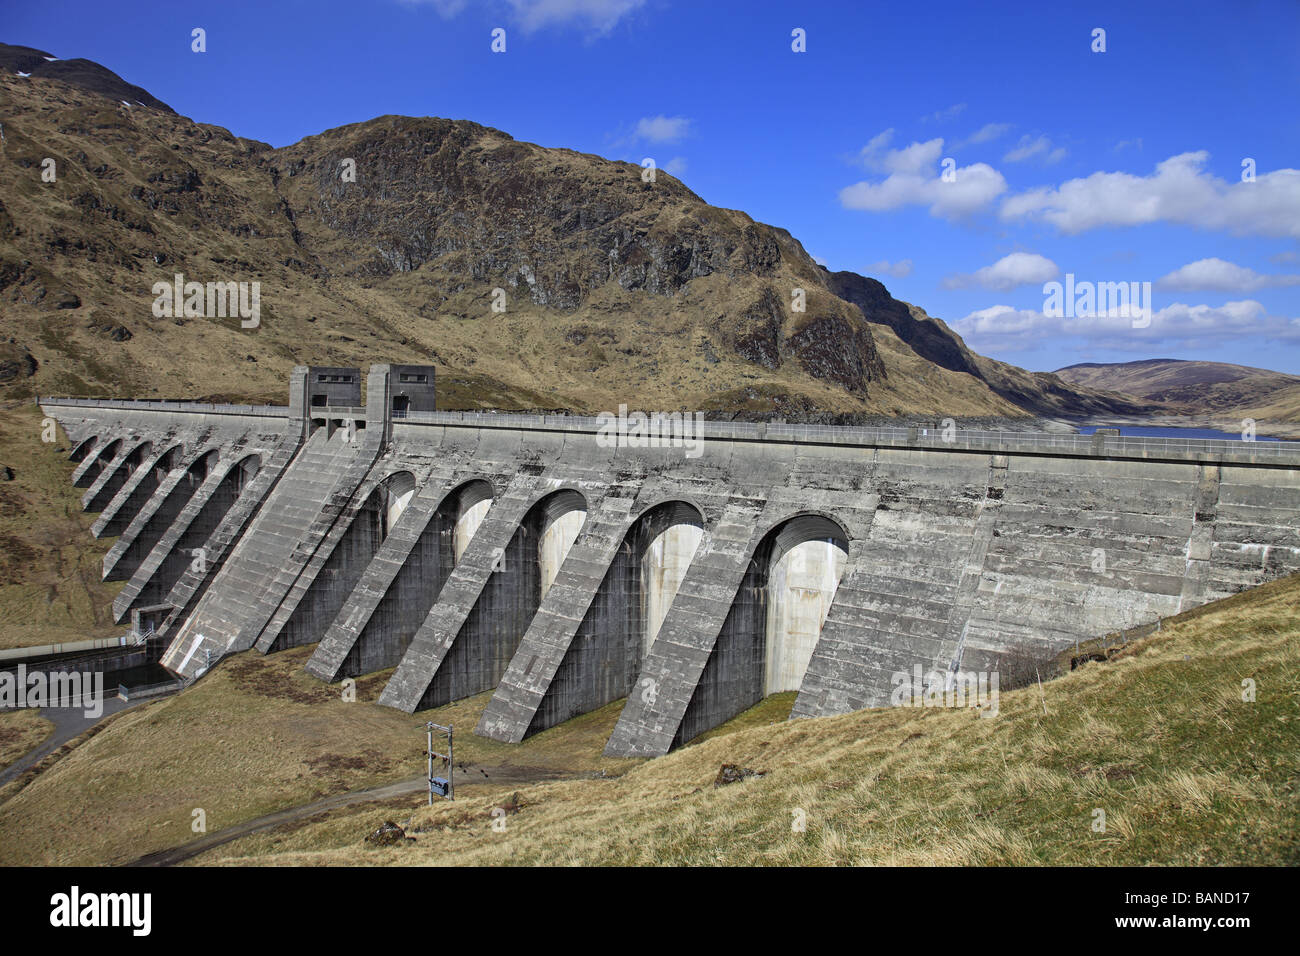 Lawers Dam, Glen Lyon, hydro electric scheme, Perthshire, Scotland Stock Photo